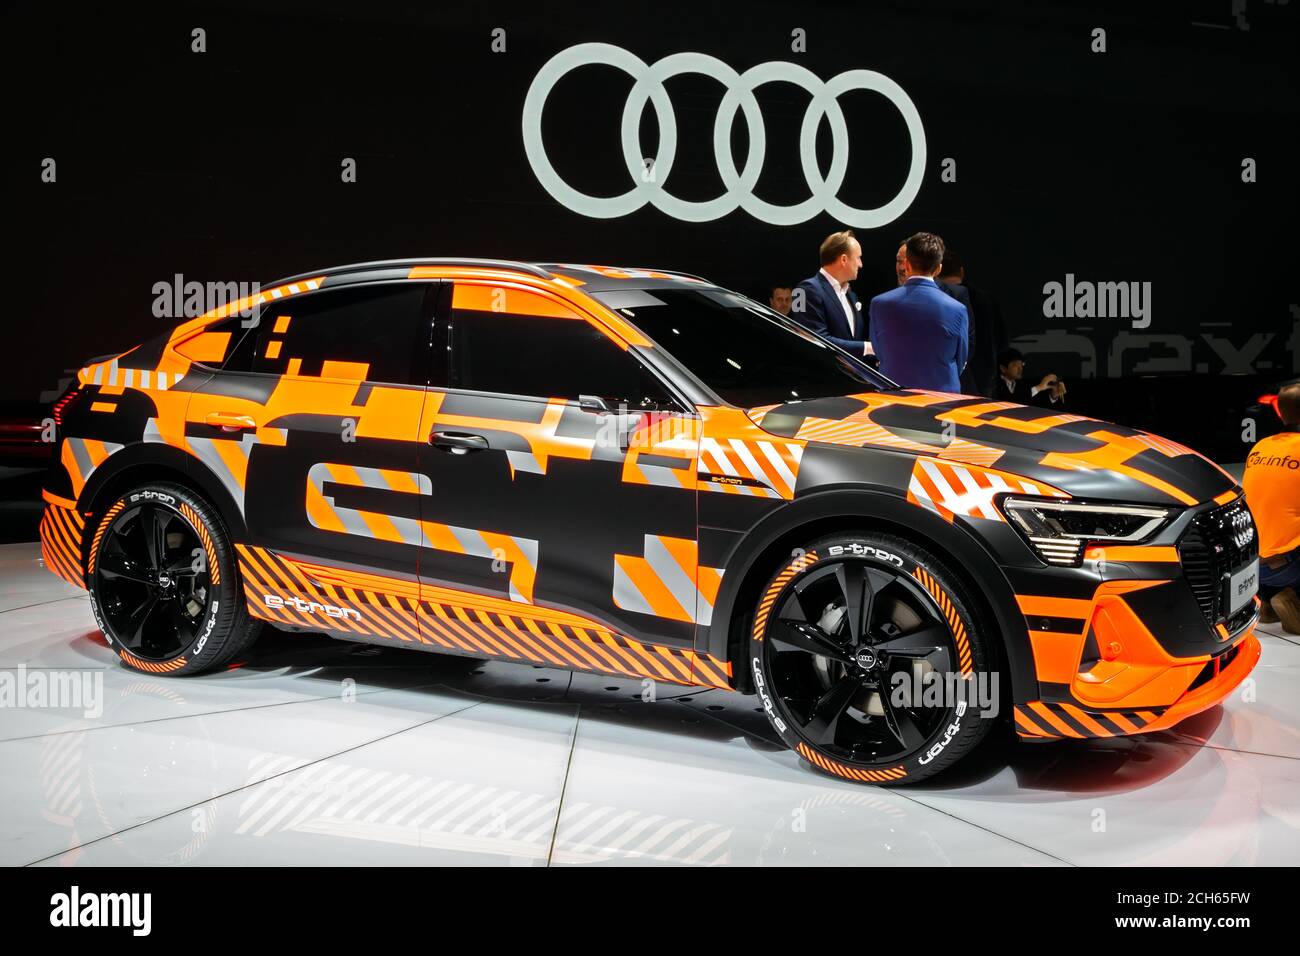 Audi Modell Stockfotos und -bilder Kaufen - Alamy